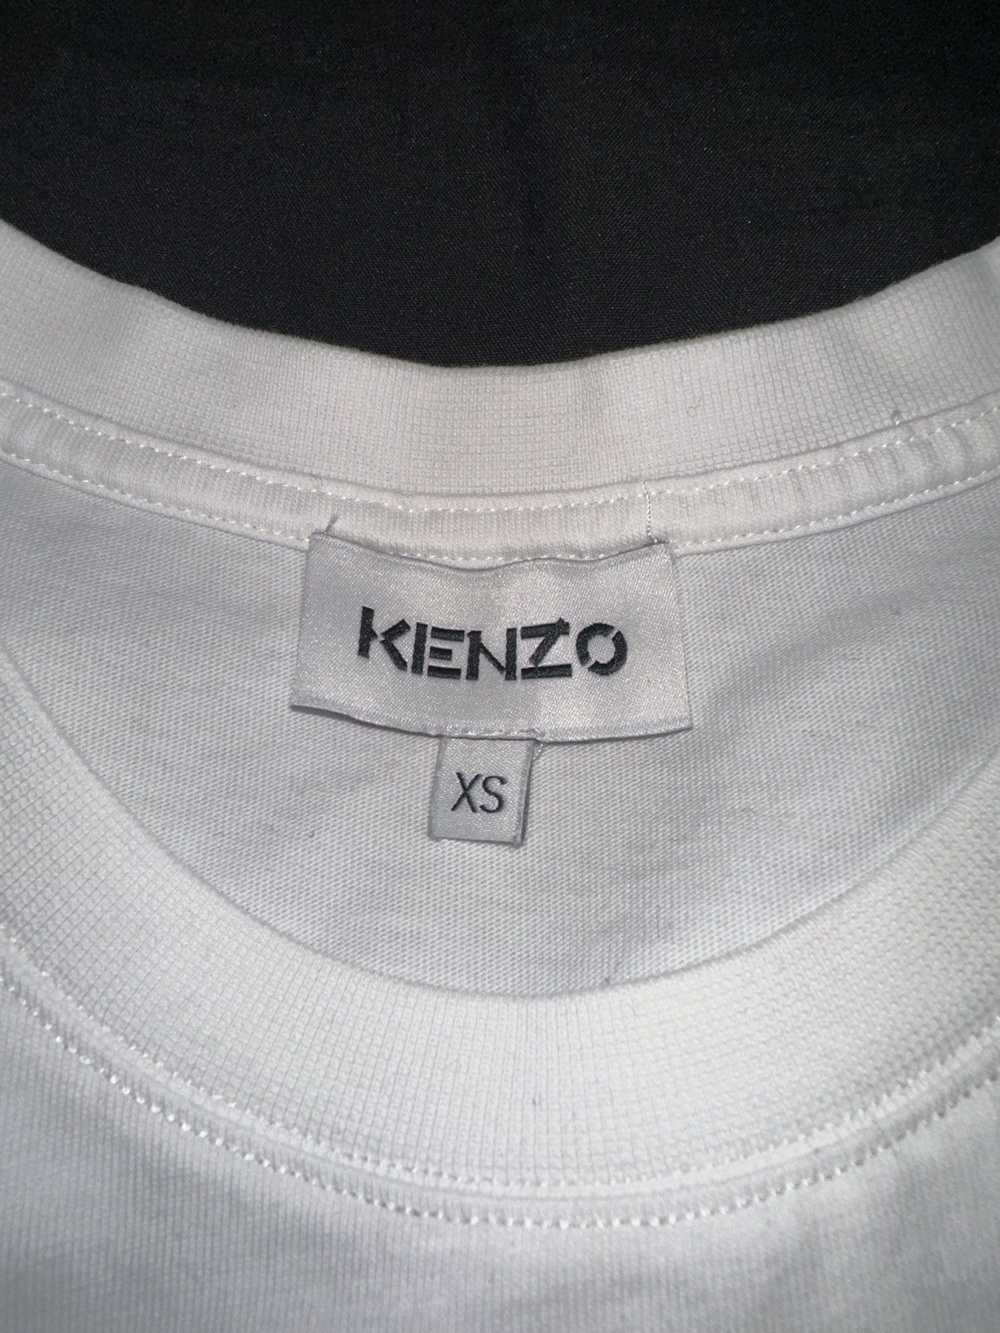 Kenzo Kenzo - image 3